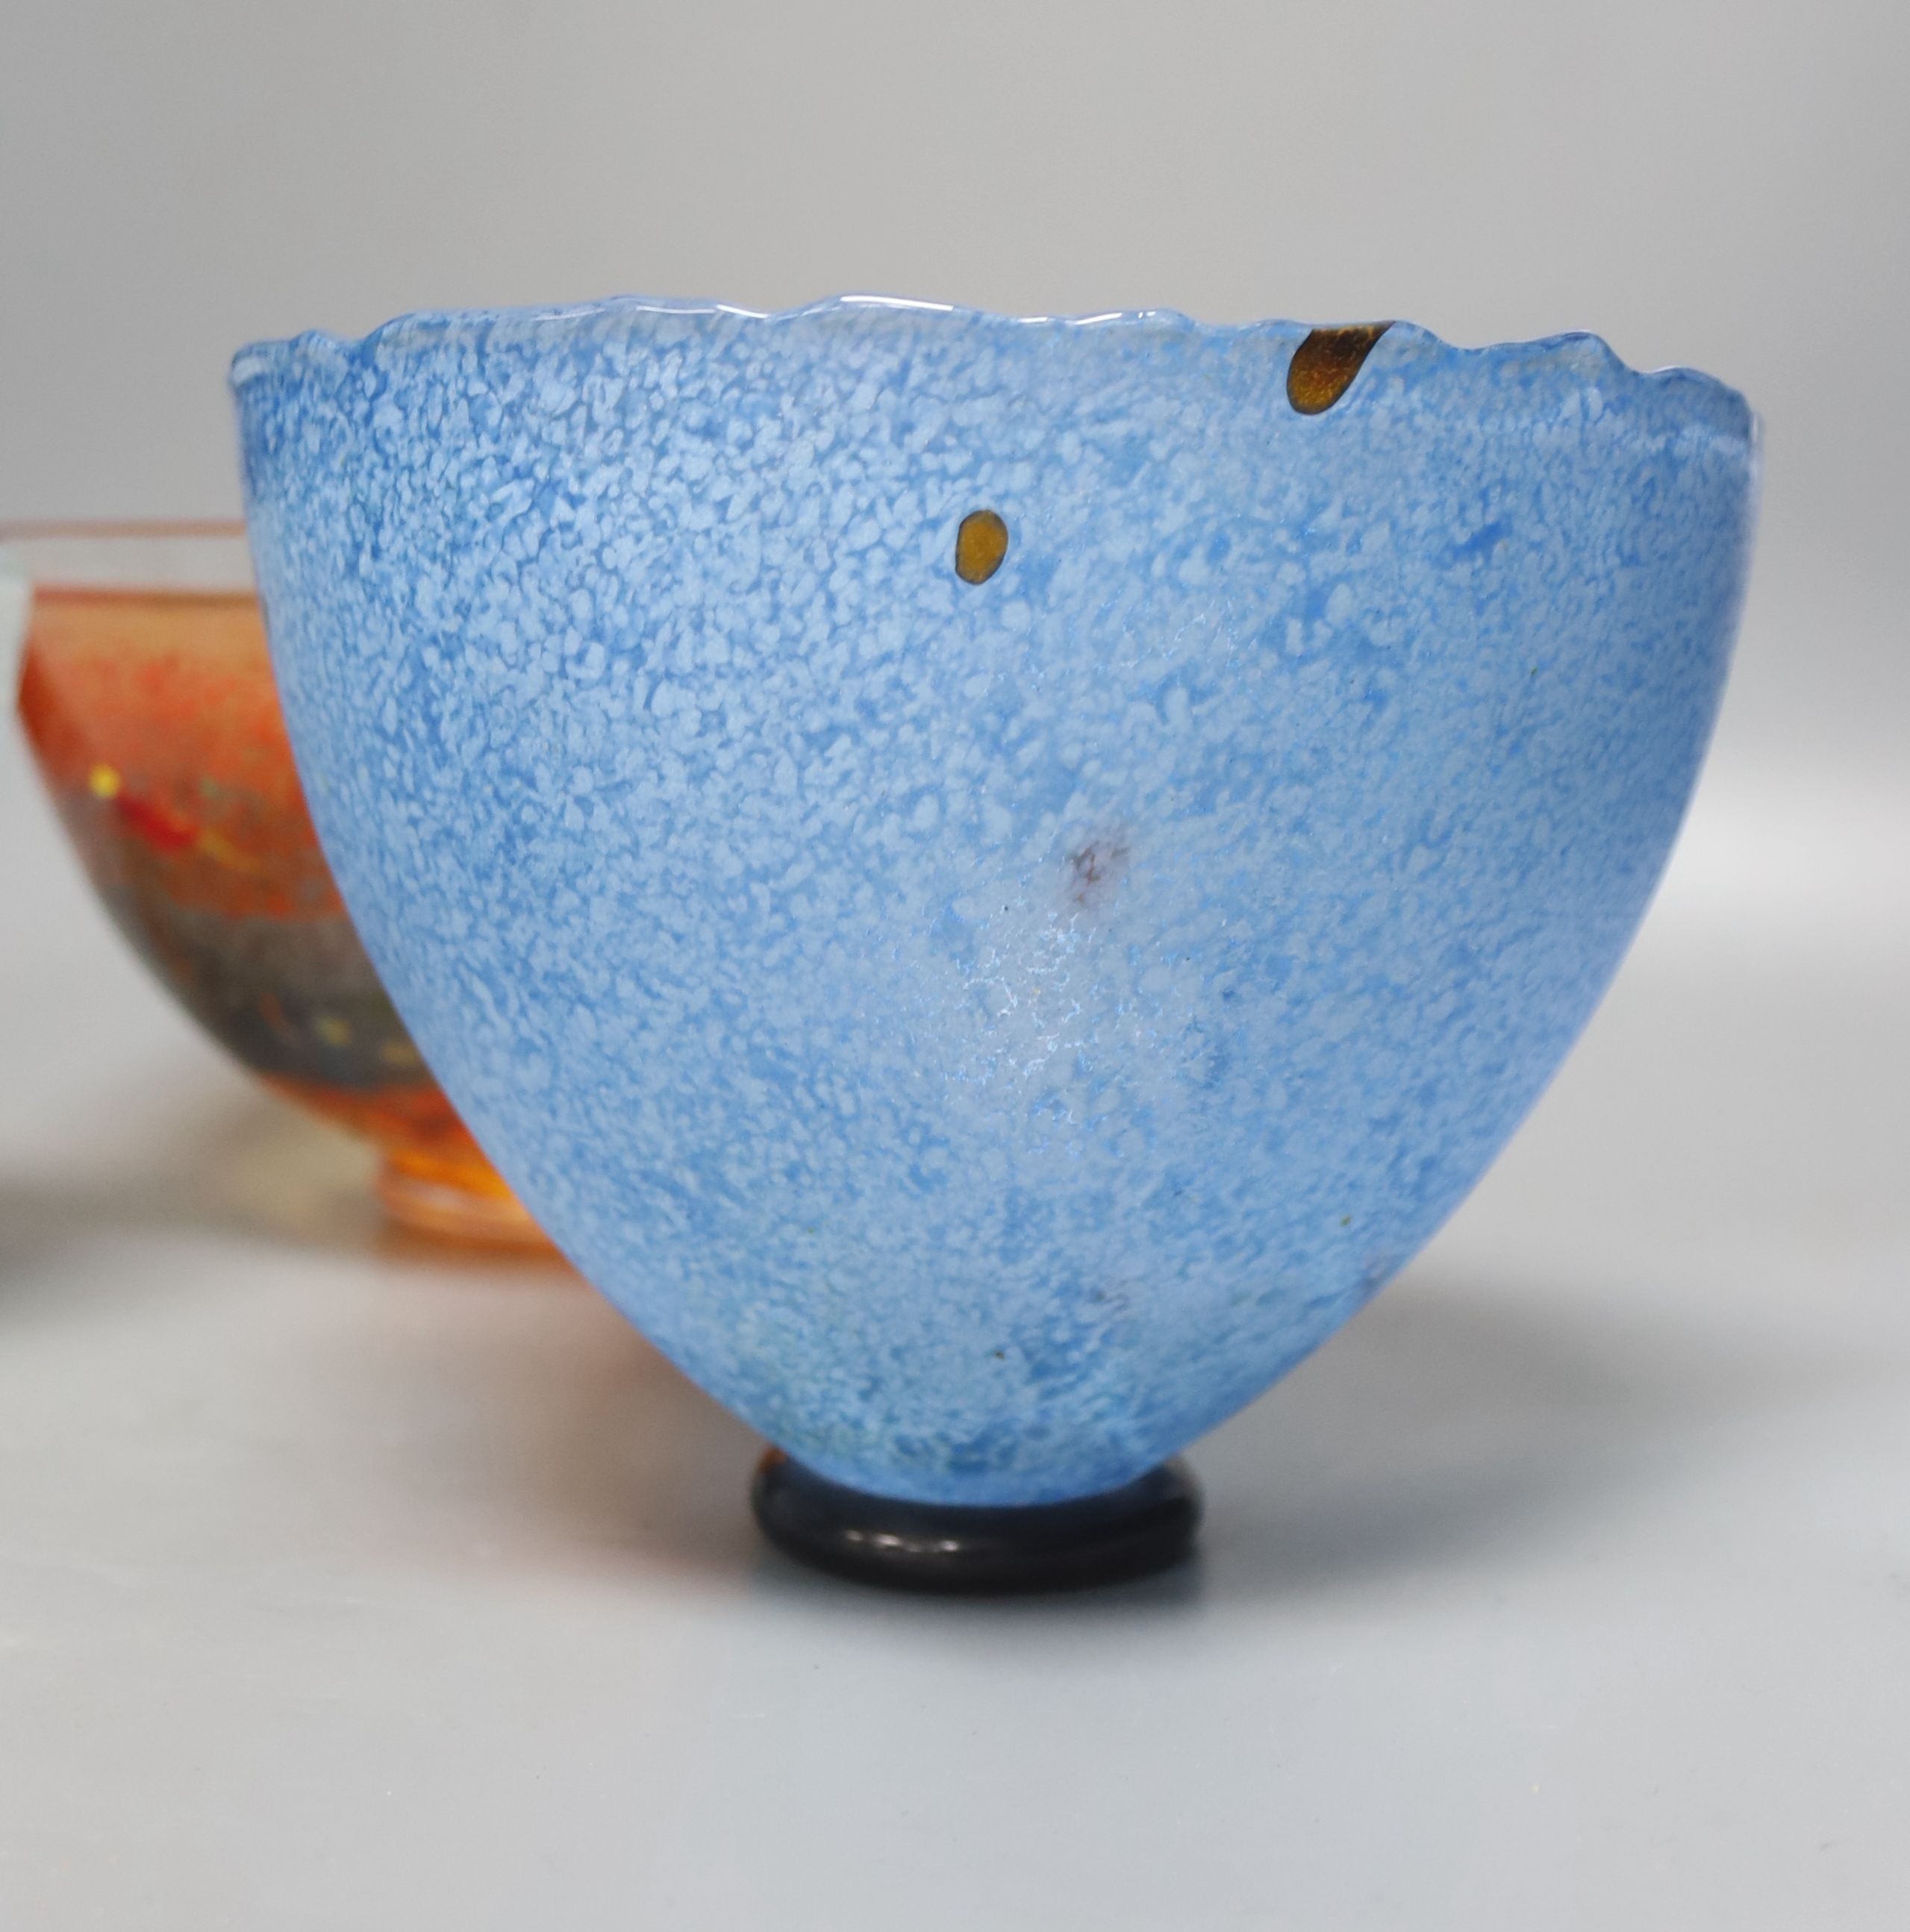 Three Kosta Boda art glass bowls, signed, diameter 21cm